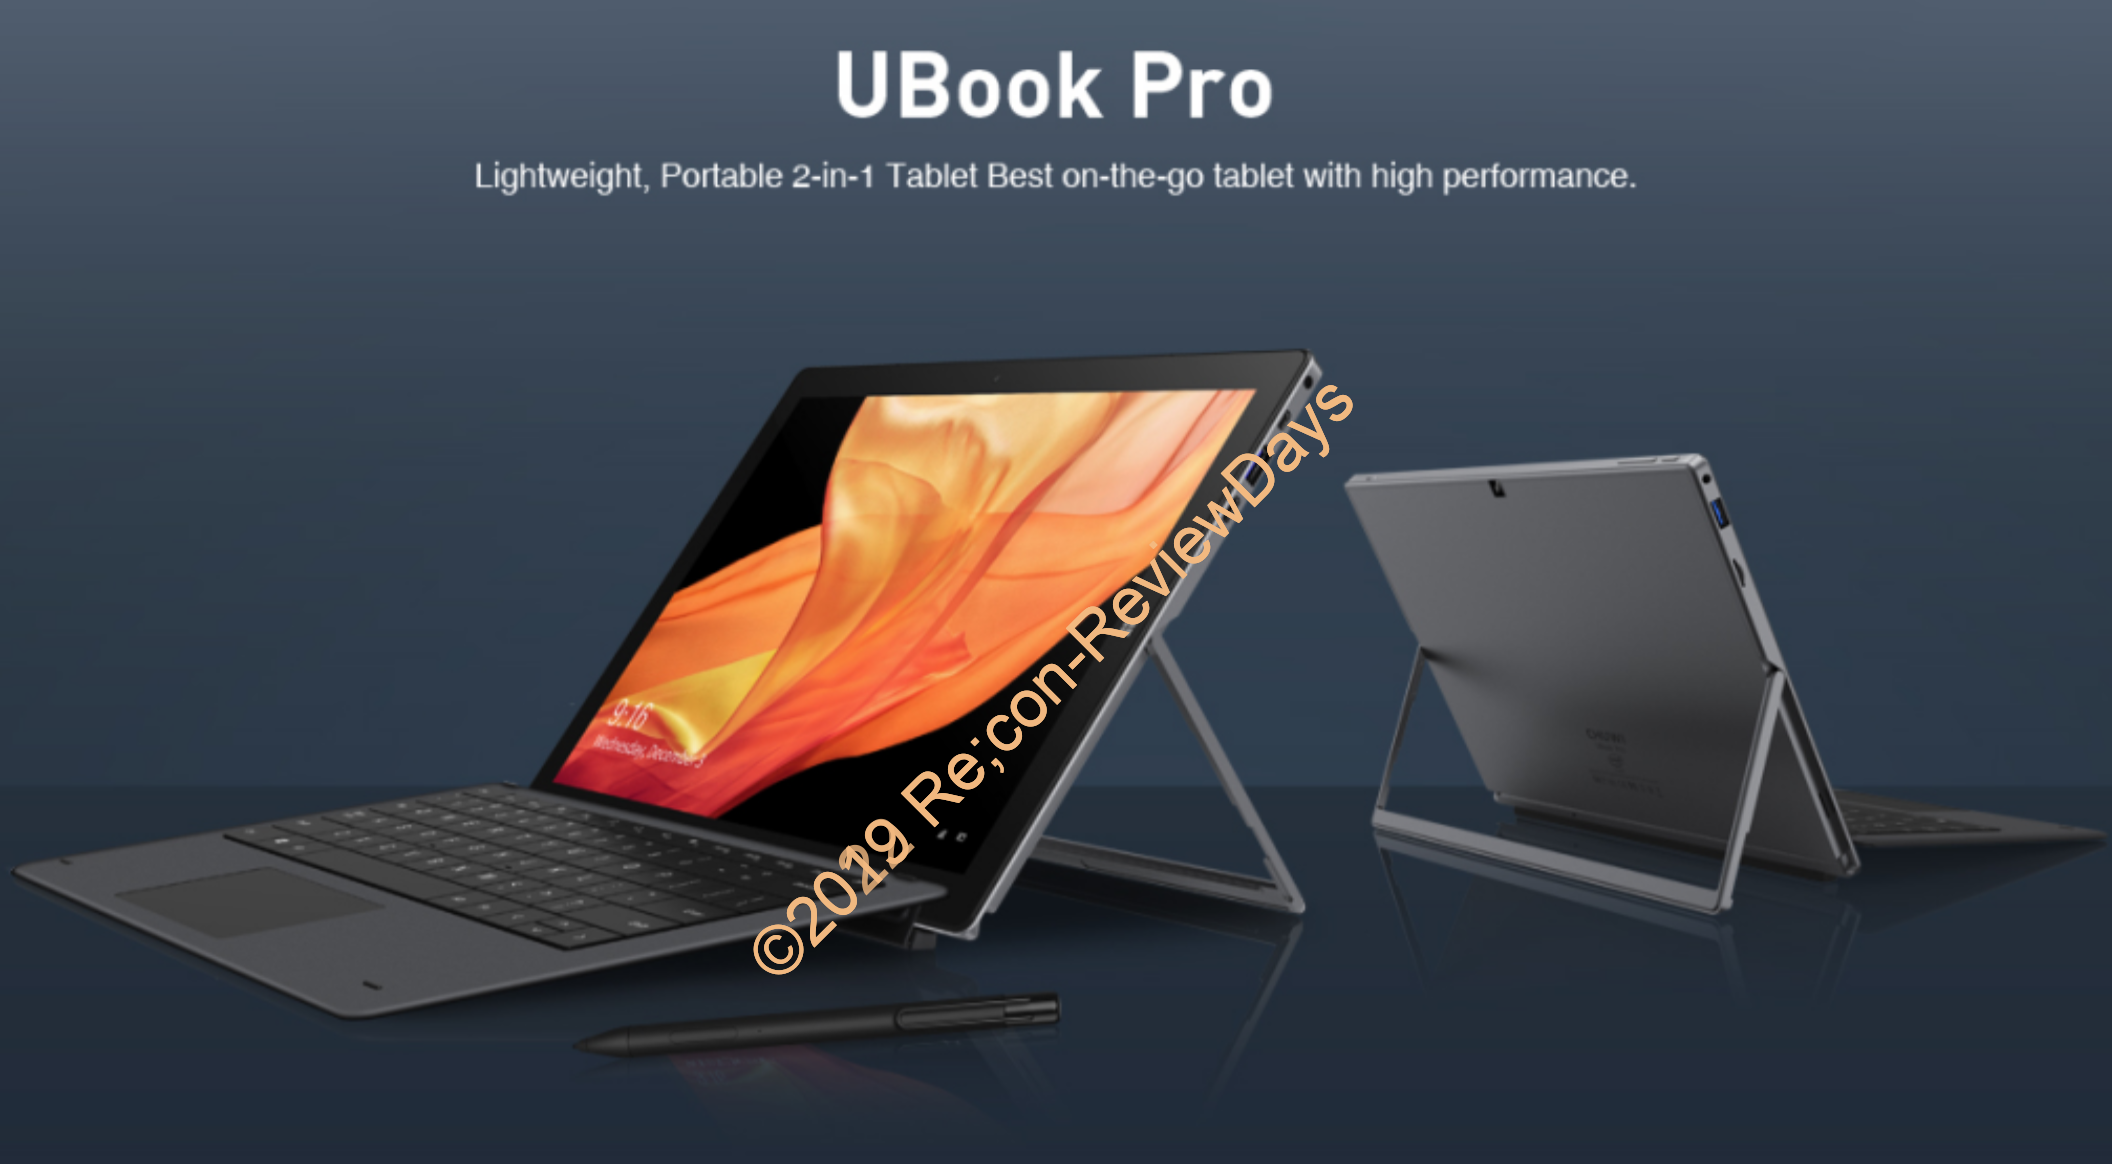 CHUWI製の12.3インチ2in1タブレットPC「UBook Pro」が10月13日17時よりINDIEGOGOにてクラウドファンディングを開始予定 #CHUWI #UBookPro #UBook